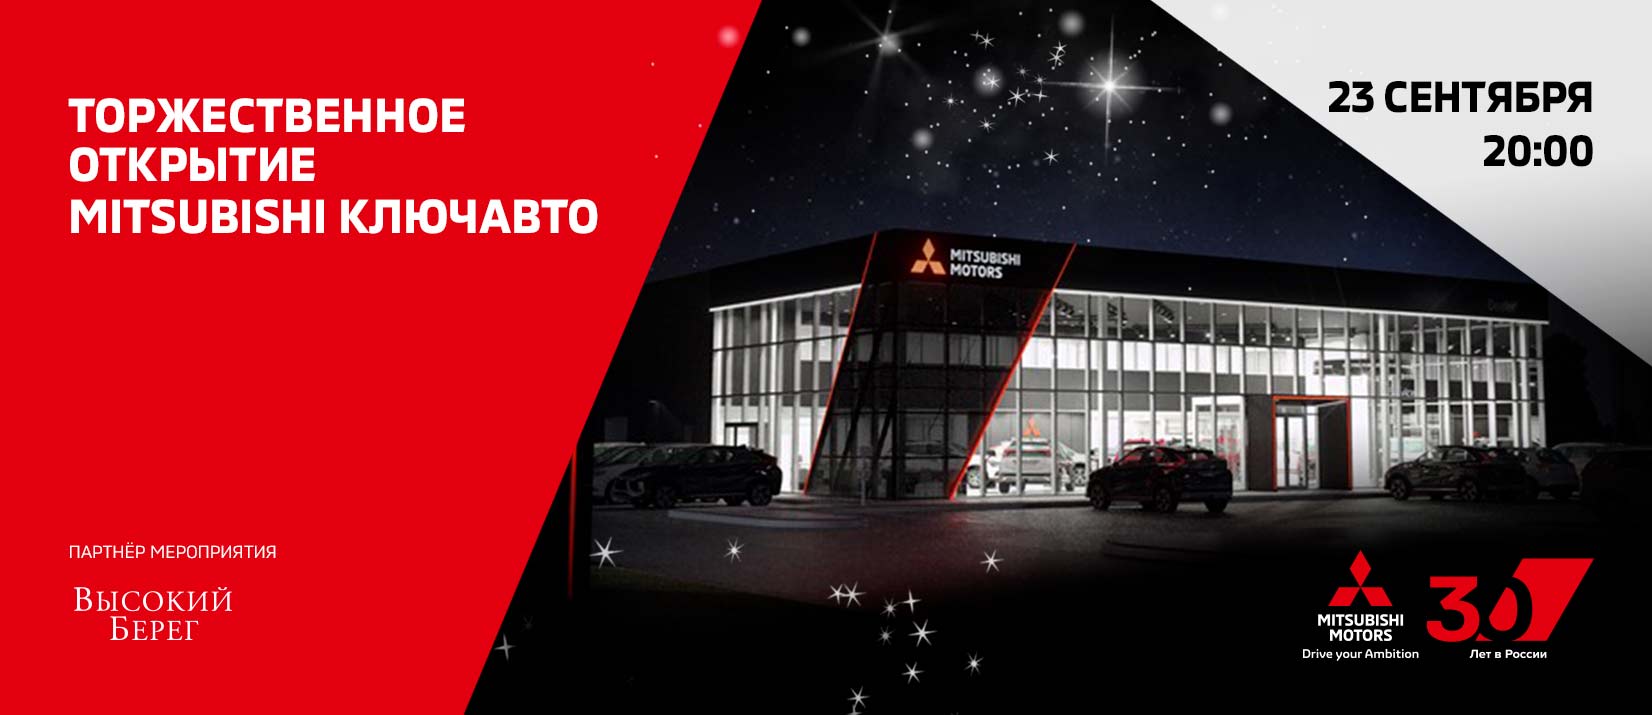 23 сентября состоится Торжественное открытие нового Дилерского Центра MITSUBISHI КЛЮЧАВТО в Краснодаре!